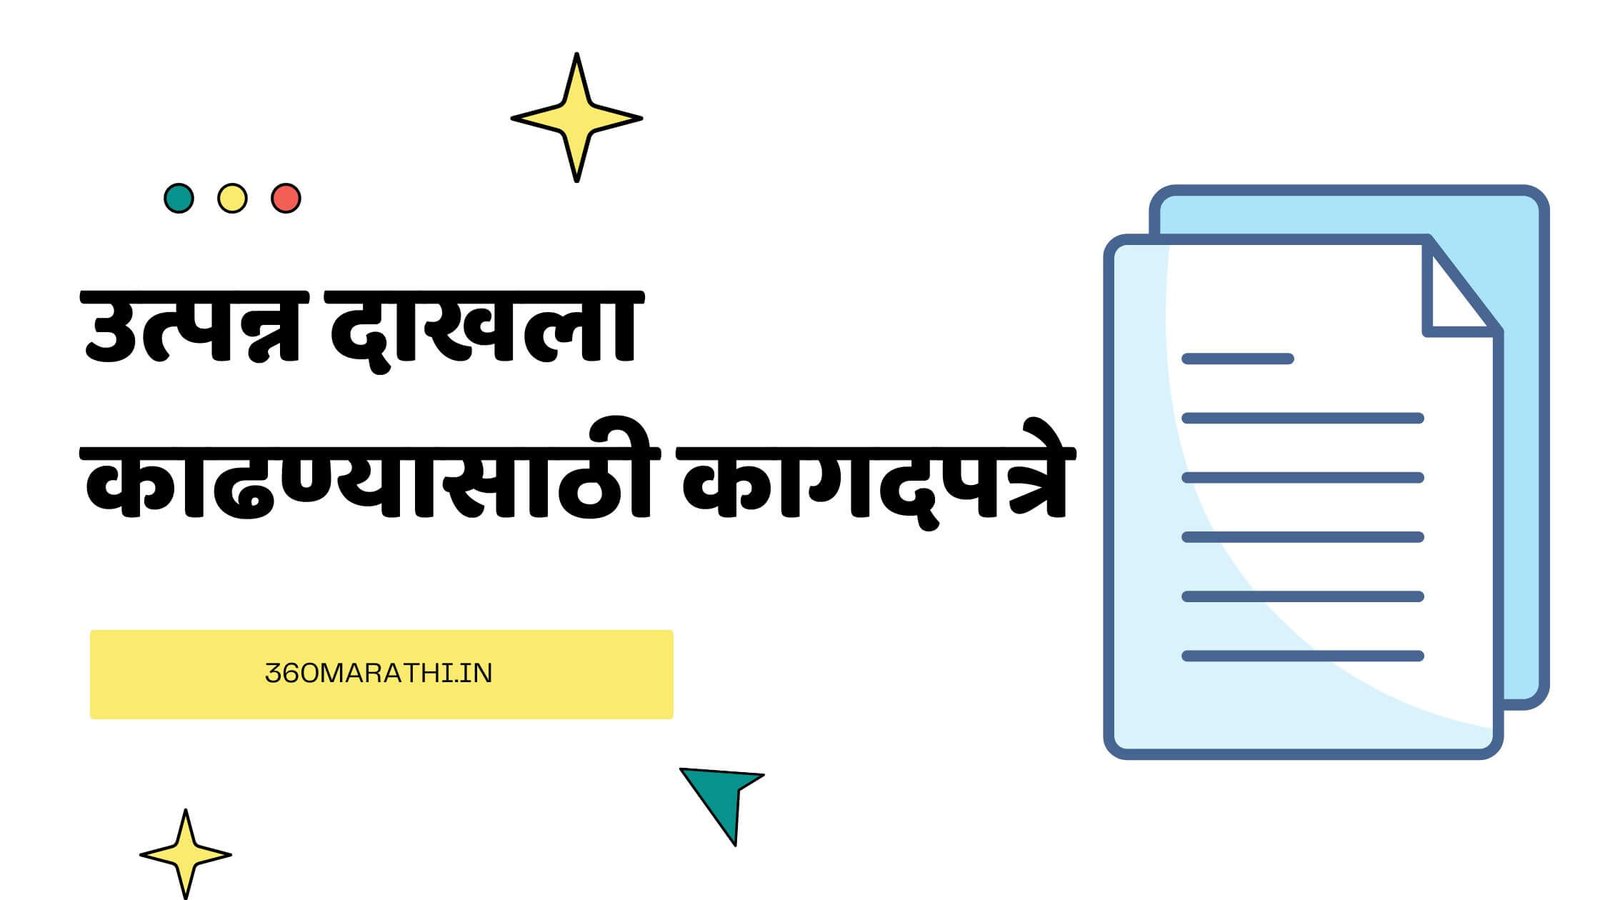 उत्पन्न दाखला काढण्यासाठी कागदपत्रे | Income Certificate Documents in Marathi